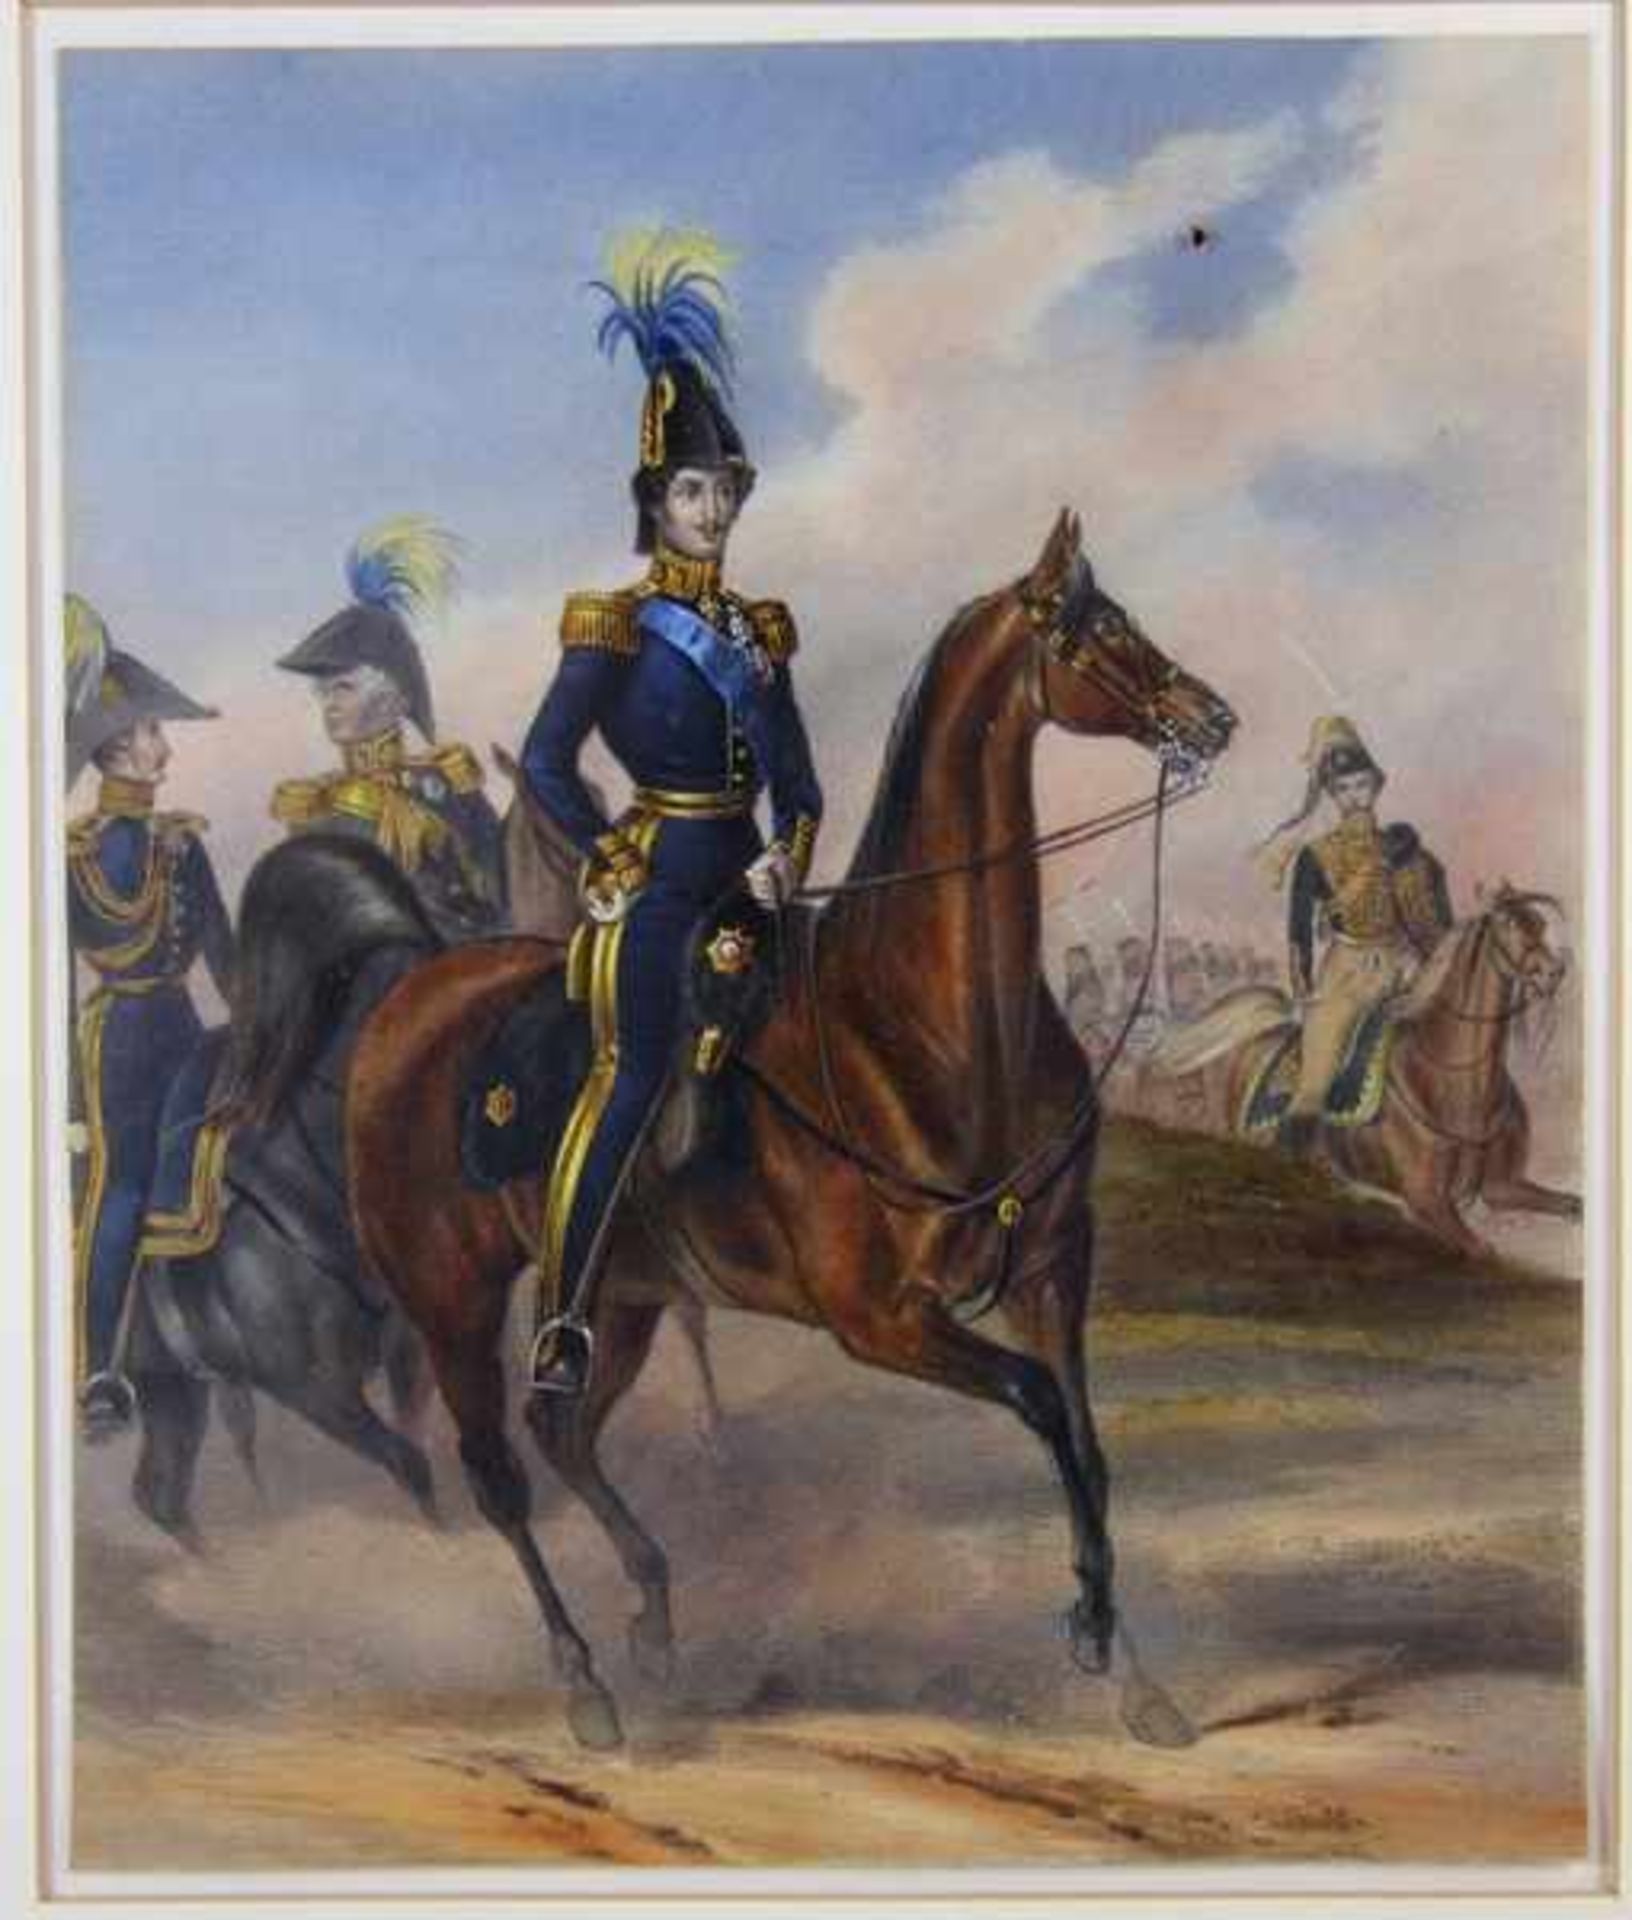 Uniformgraphik19. Jhd., schön kolorierte Graphik mit Offizieren zu Pferde, im Hintergund weitere